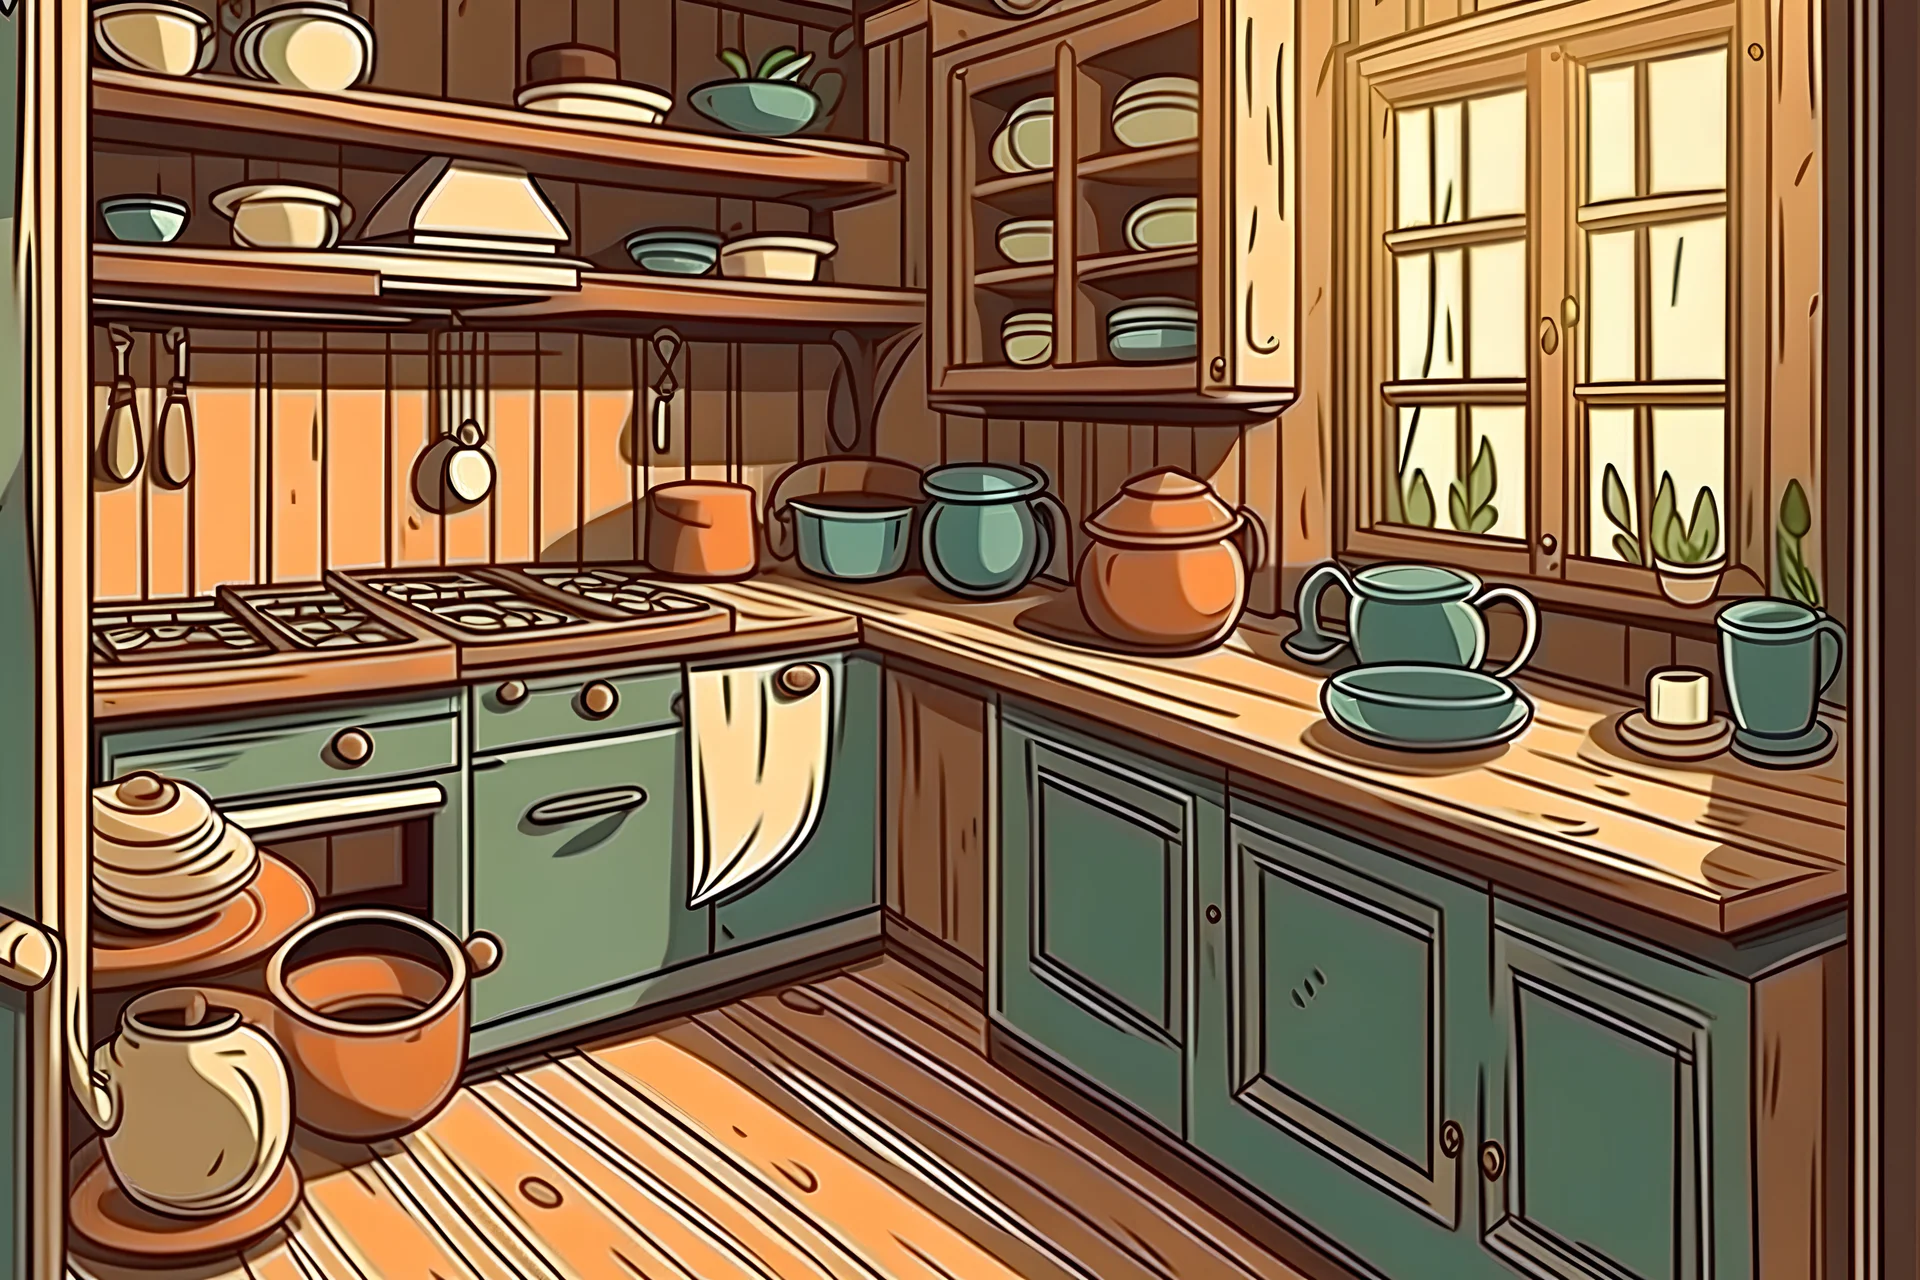 cozinha RUSTICA com uma xicara de café no balcão, cartoon style, full view